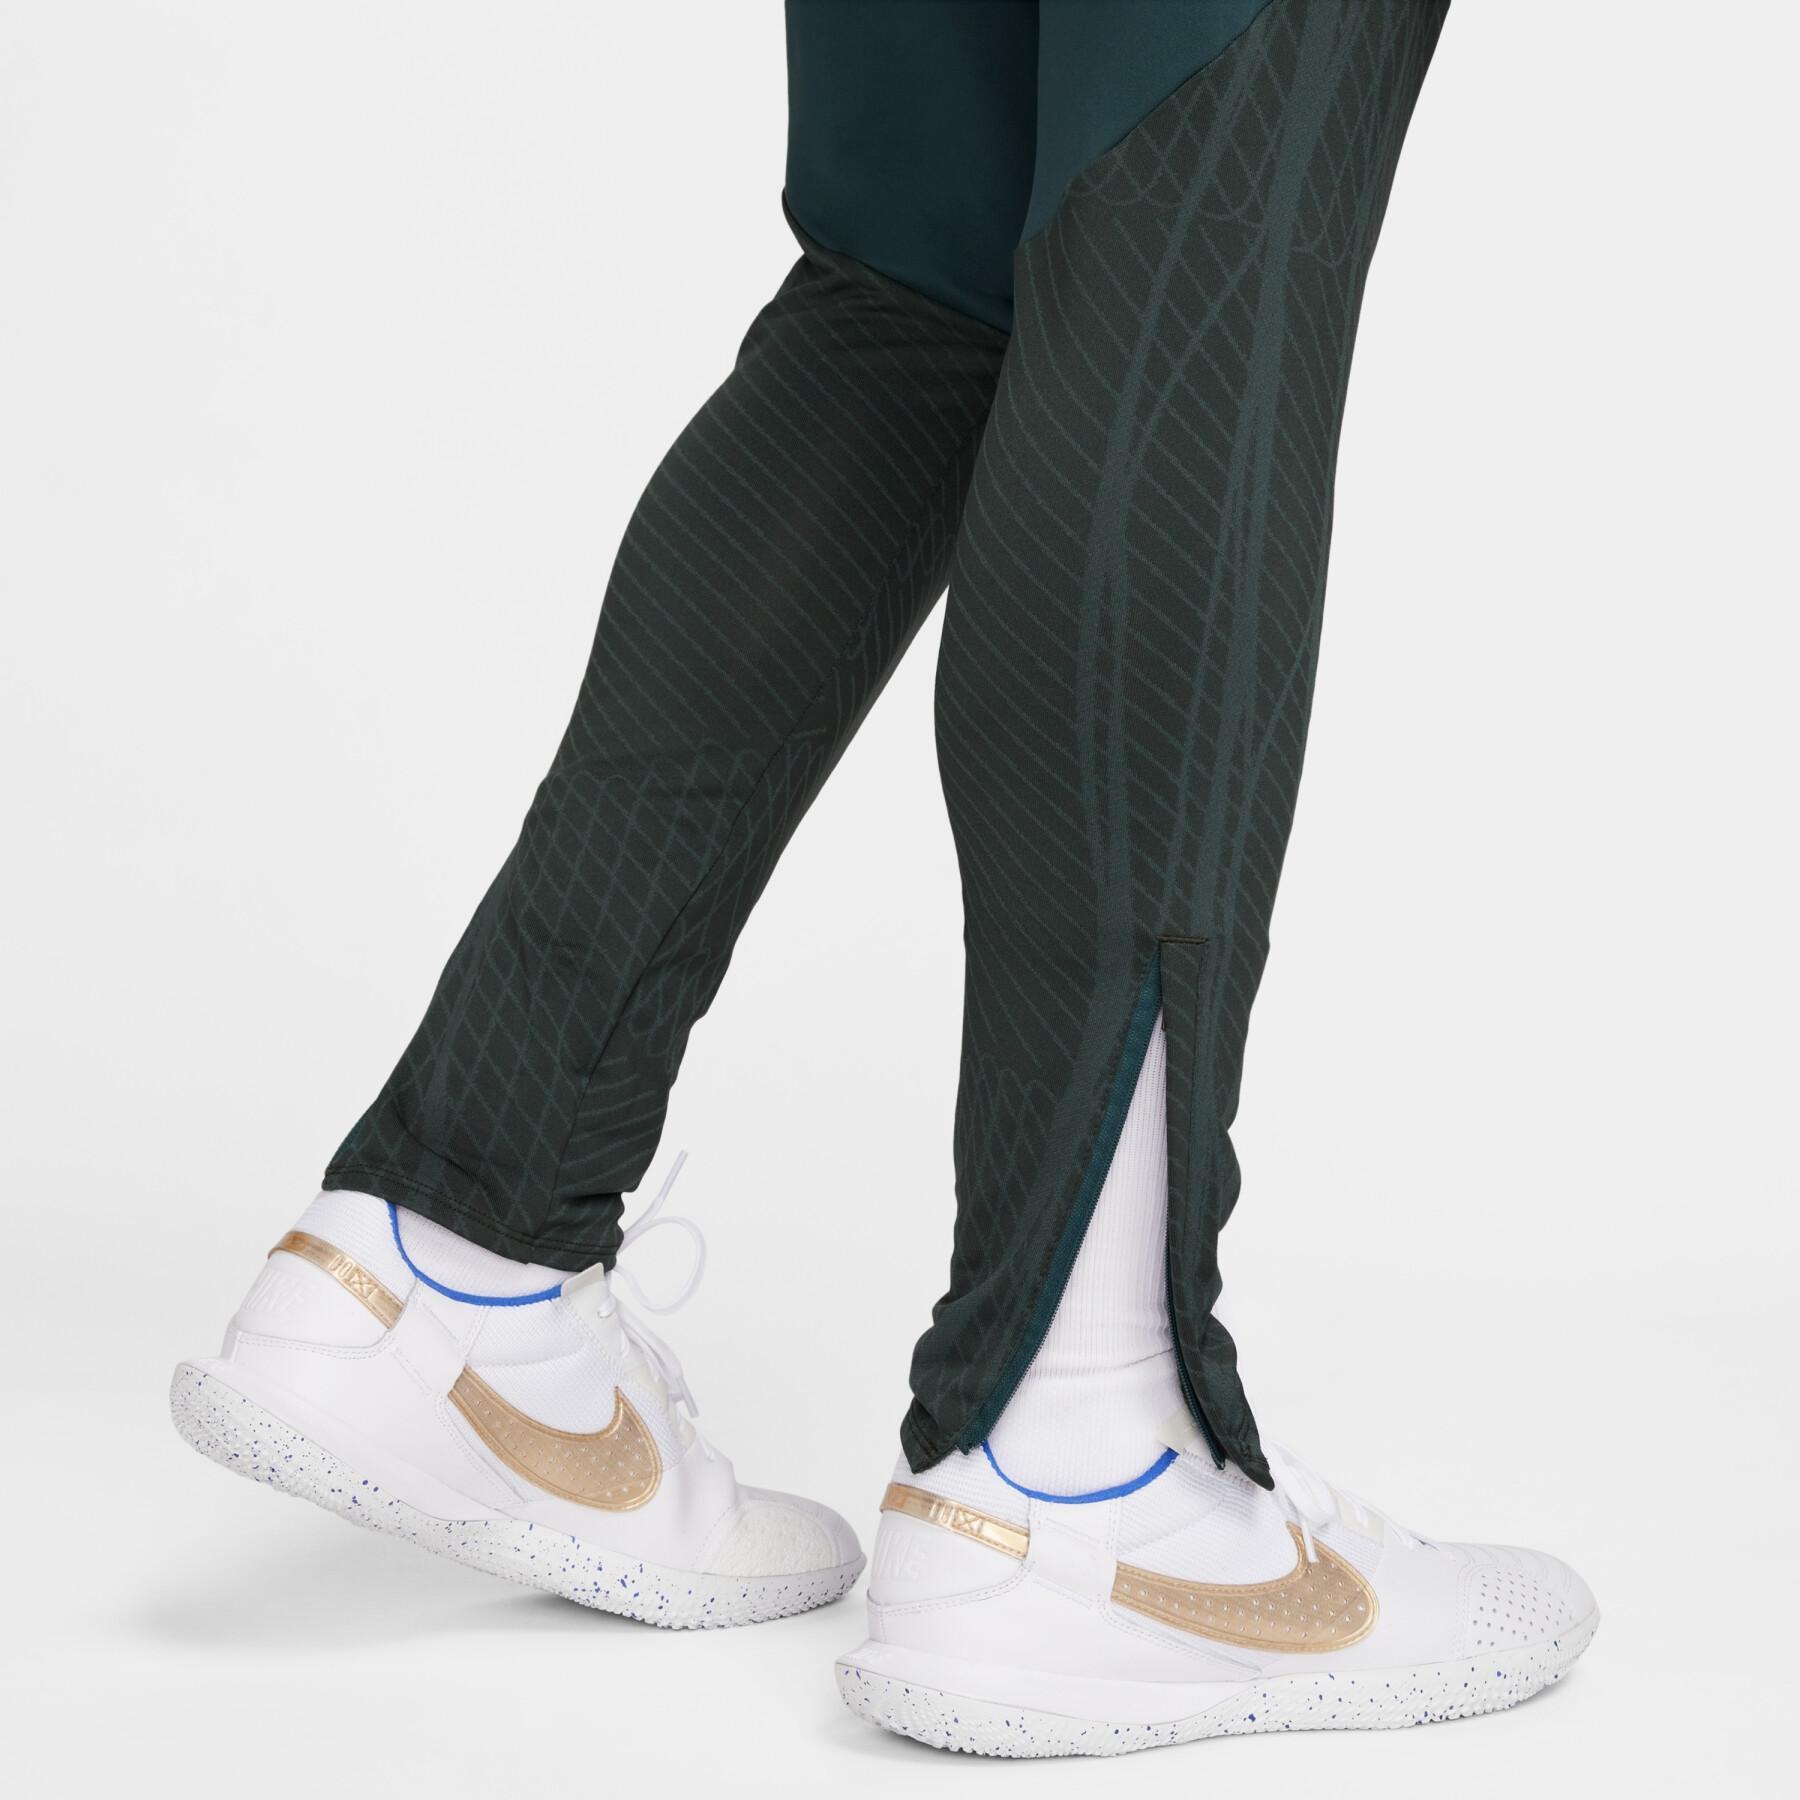 Pantalón de chándal Nike Dri-FIT Strike